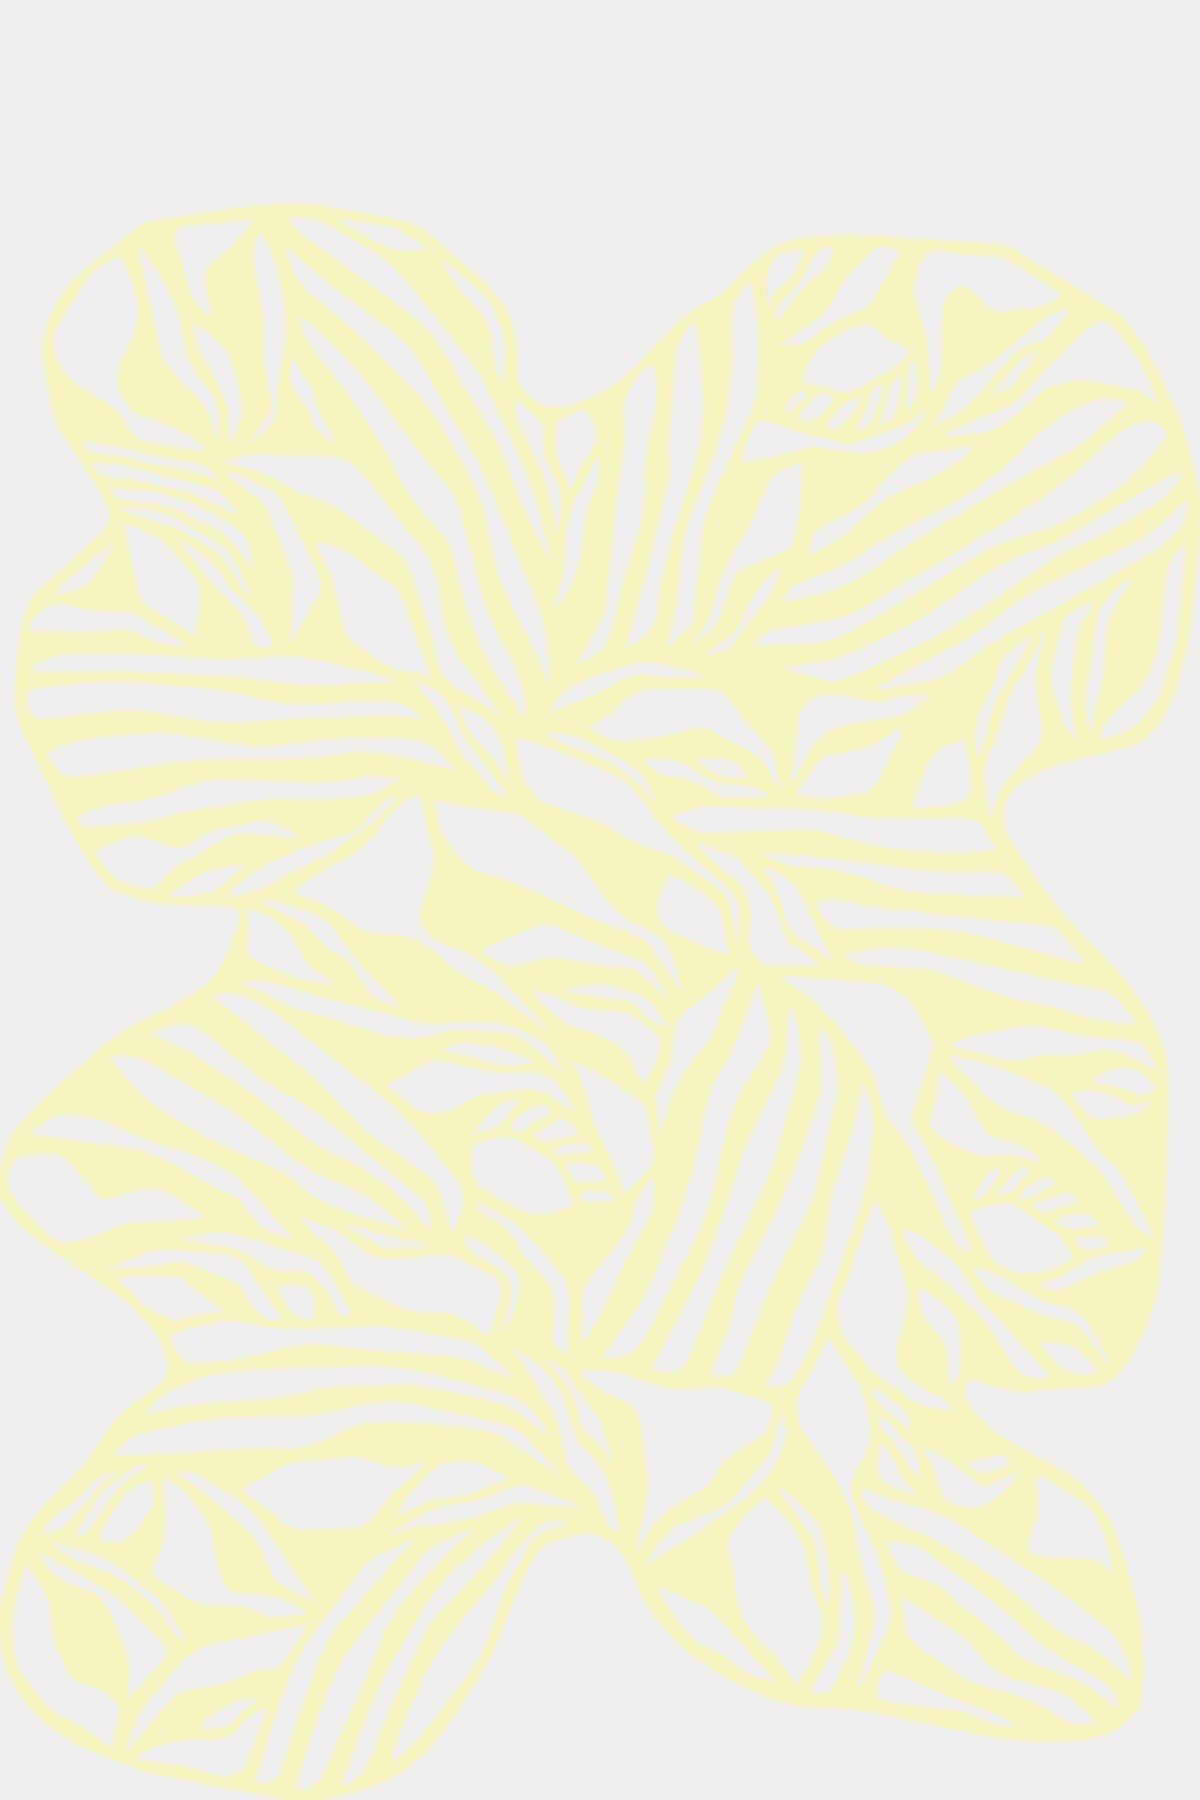 Studio sul rettangolo organico di papercut A4, giallo